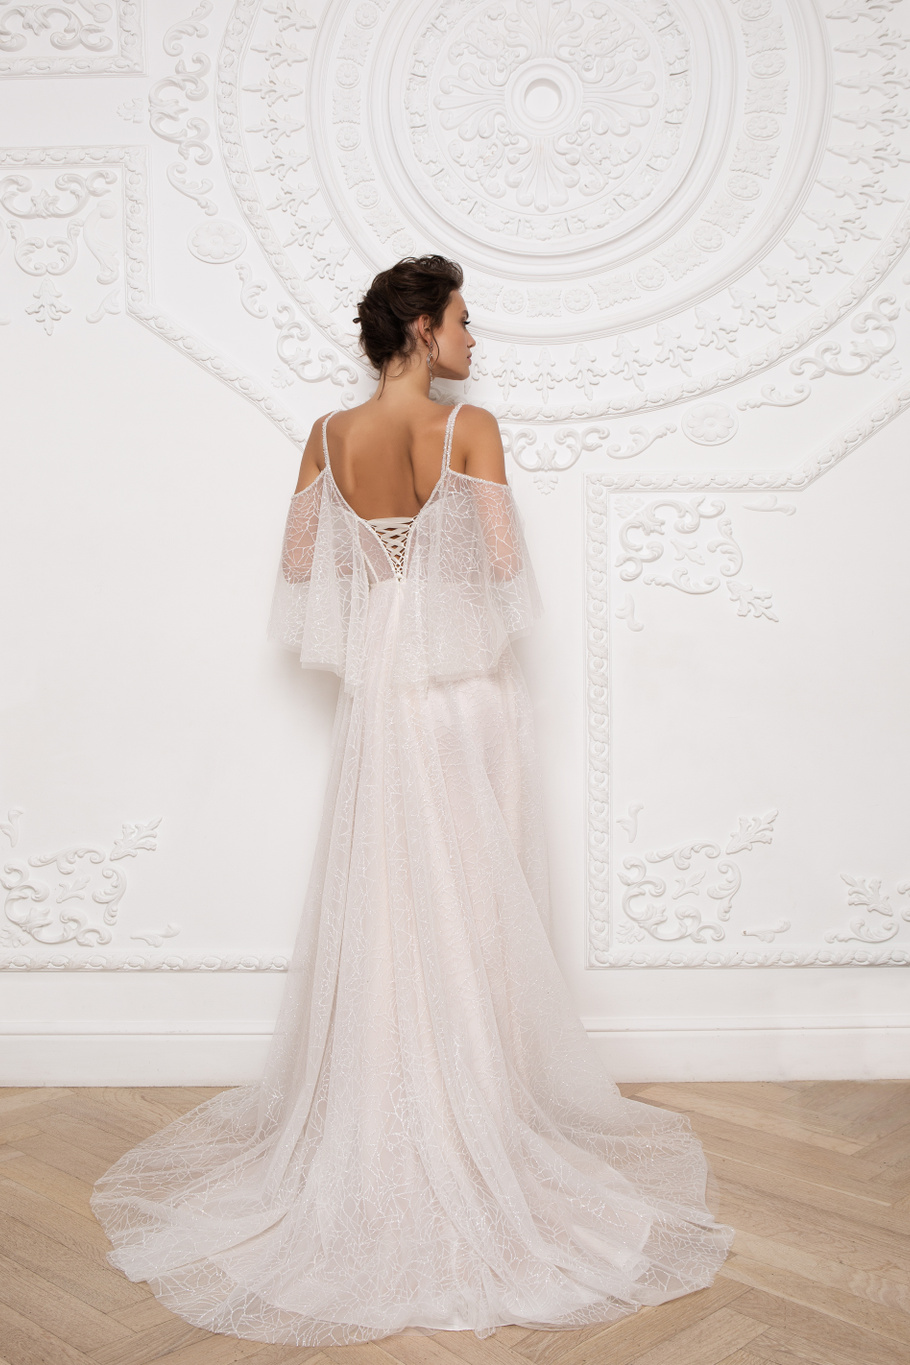 Купить свадебное платье «Кассия» Мэрри Марк из коллекции 2020 года в Ярославле